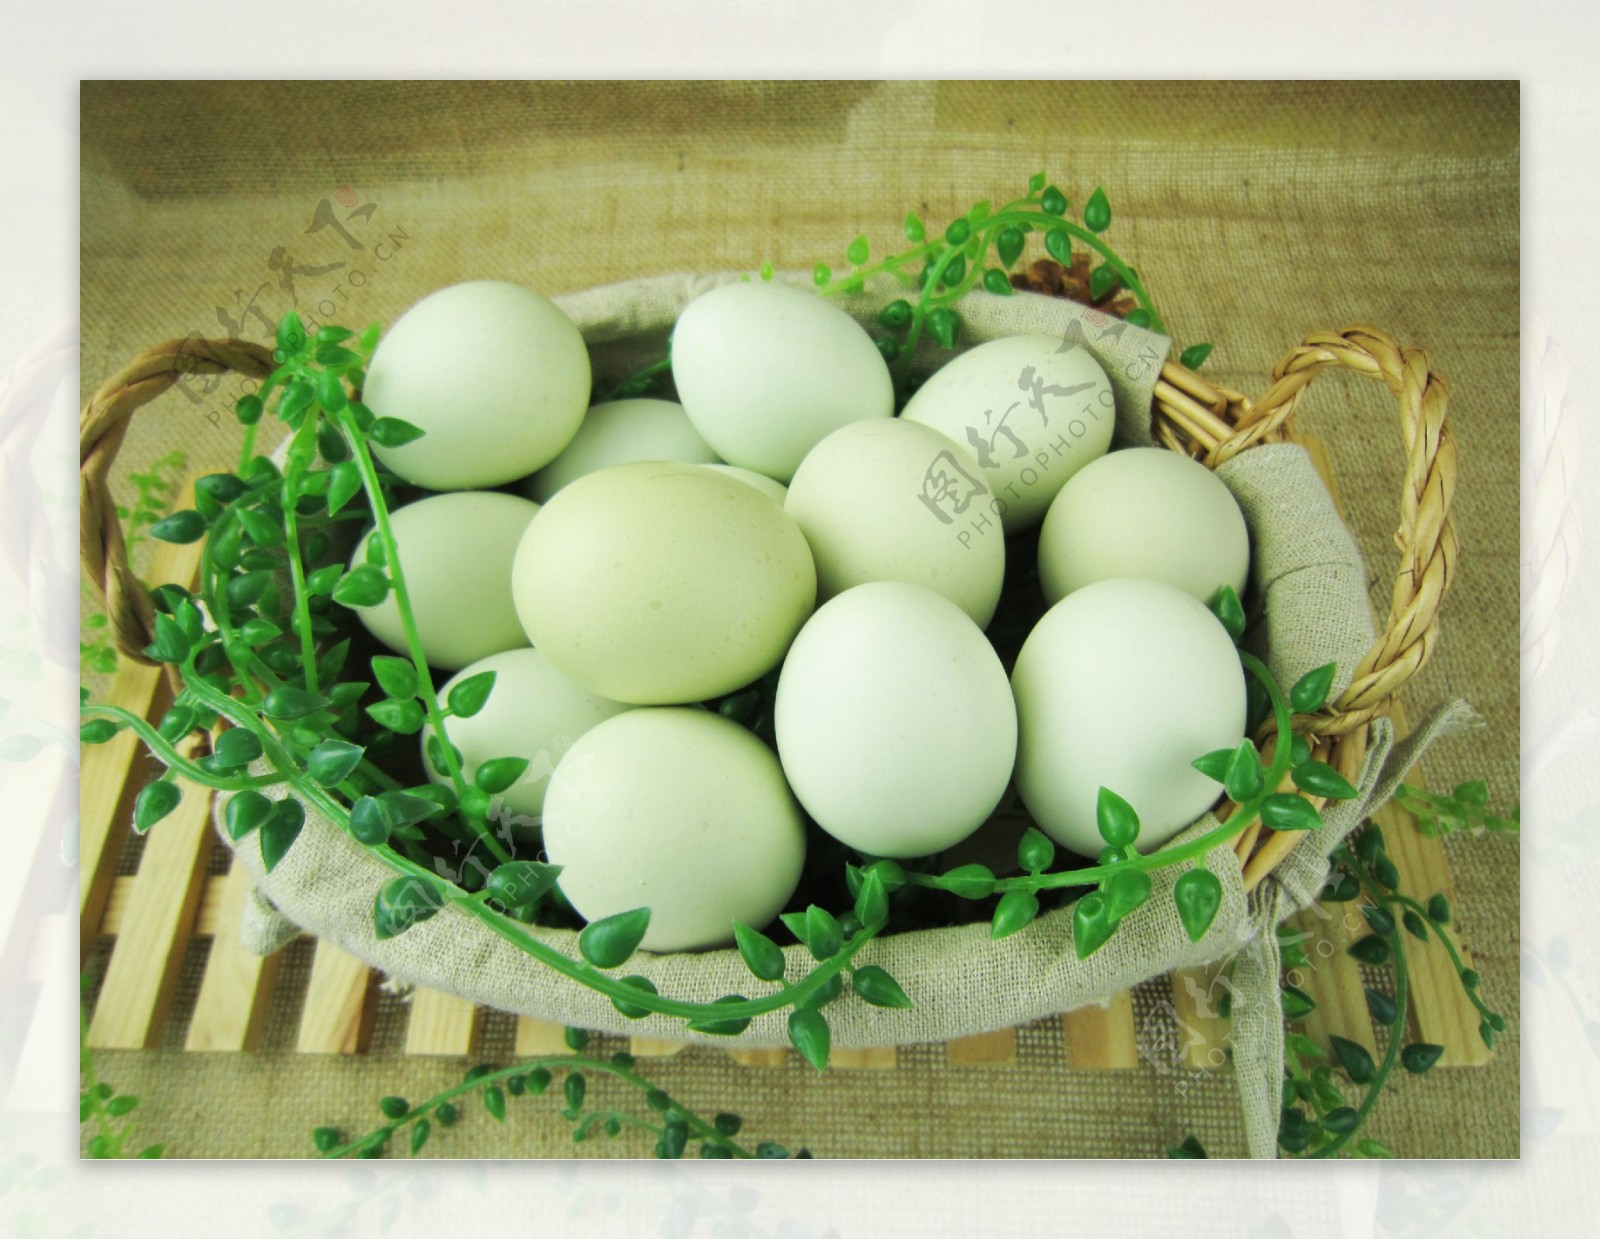 绿壳鸡蛋土鸡蛋野鸡蛋图片